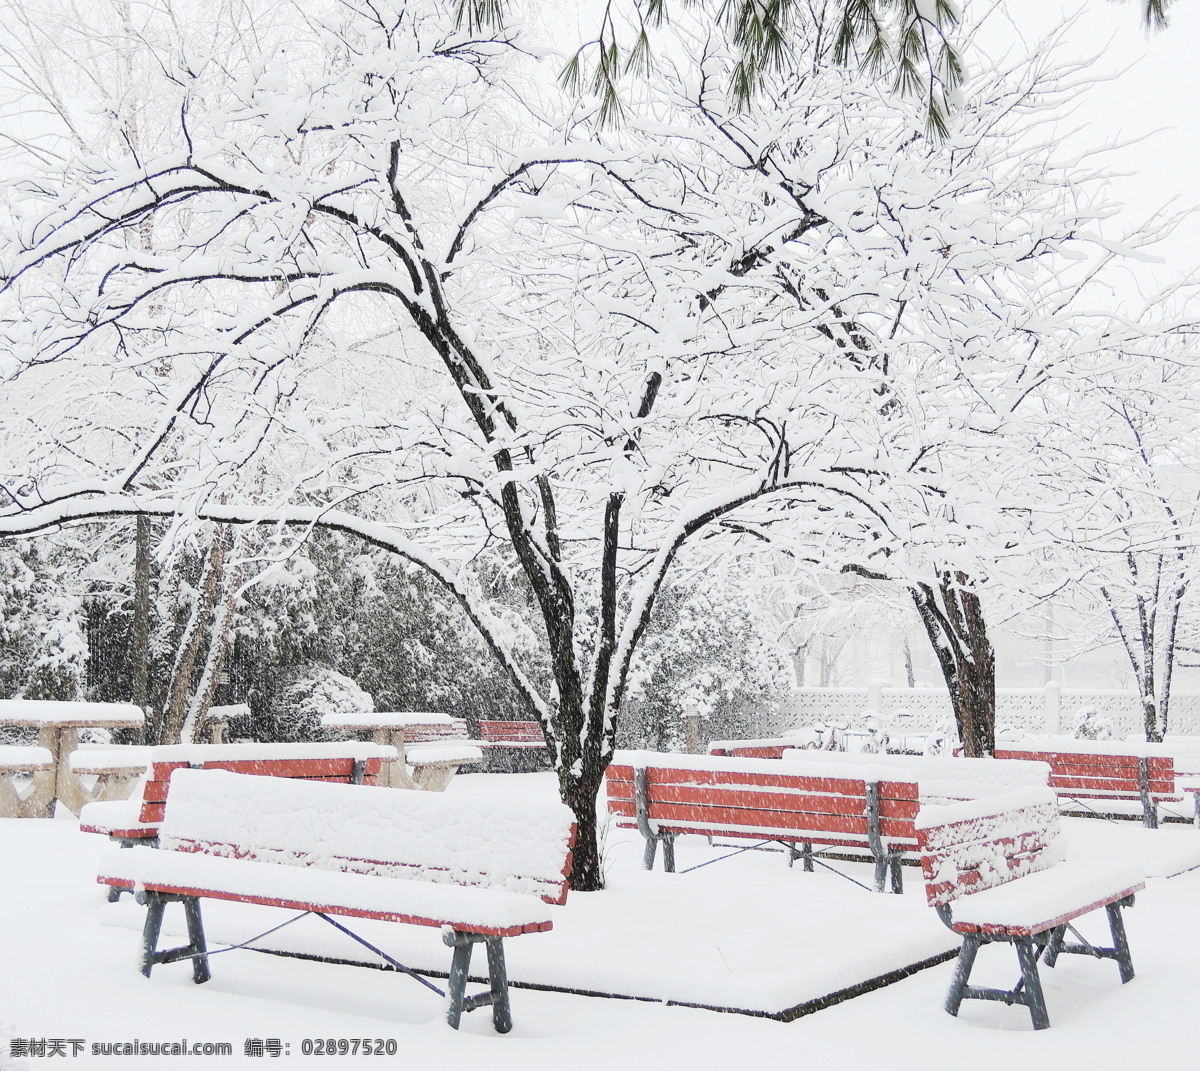 美丽 公园 雪景 冬天风景 椅子 丽公园风景 公园冬季风景 美丽雪景 雪地风景 风景摄影 雪景图片 风景图片